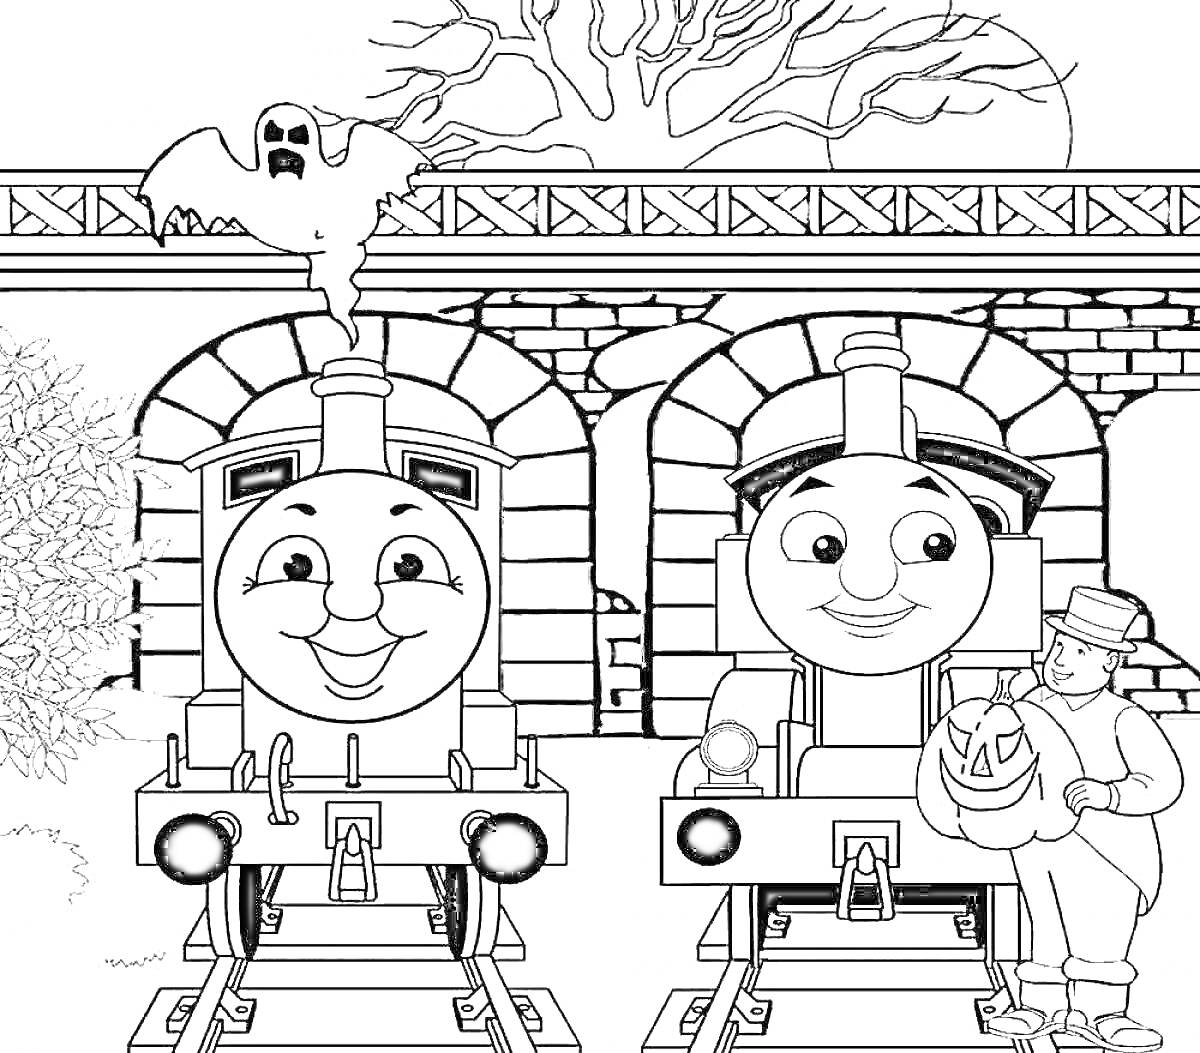 Раскраска Паровозы Томас и его друг перед мостом с привидением и человеком с тыквой, дерево на заднем плане